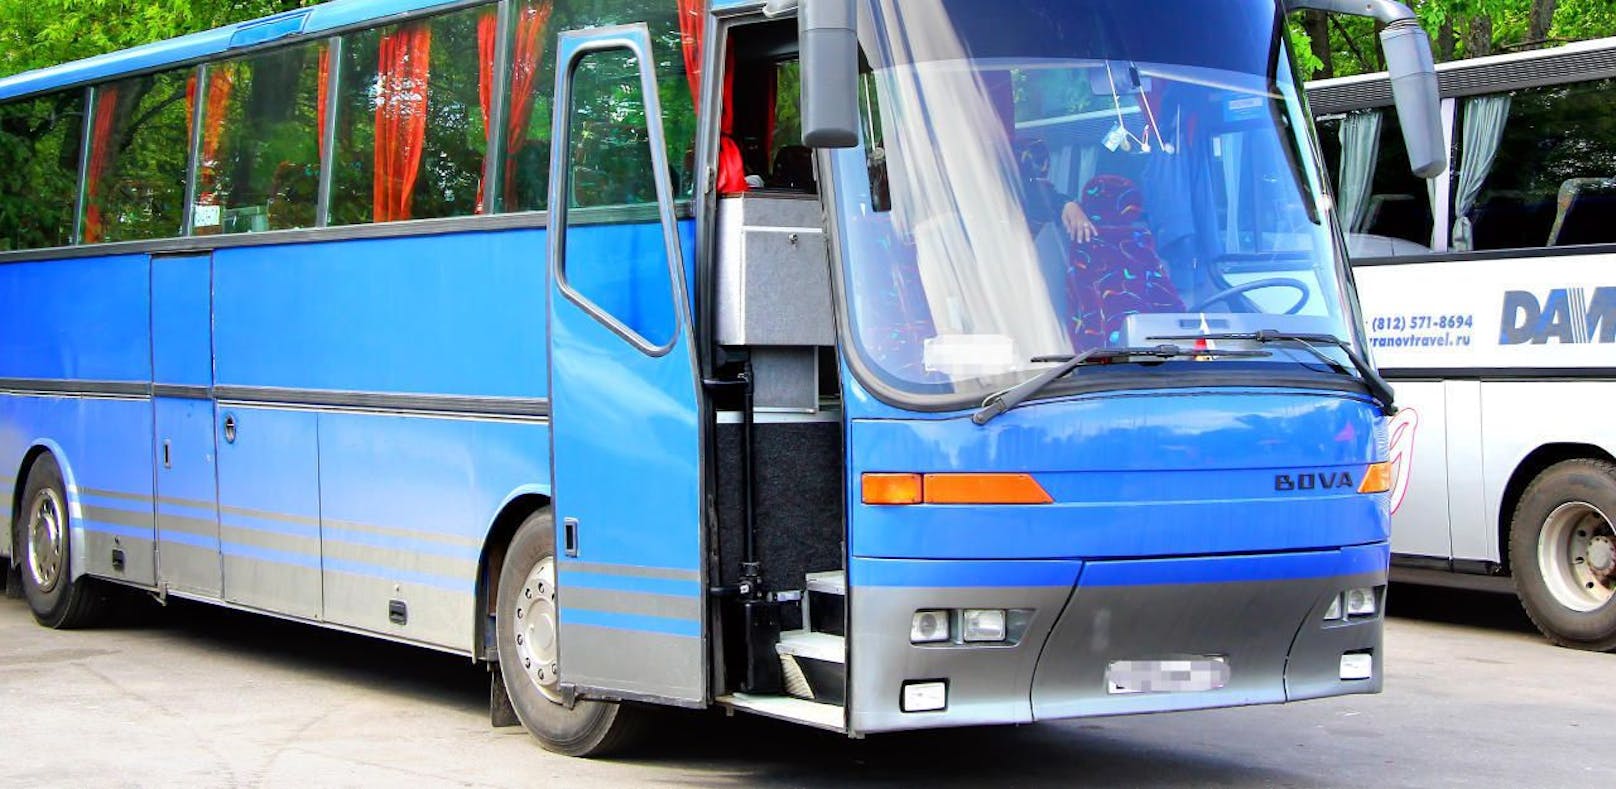 Symbolfoto eines älteren Reisebusses. 